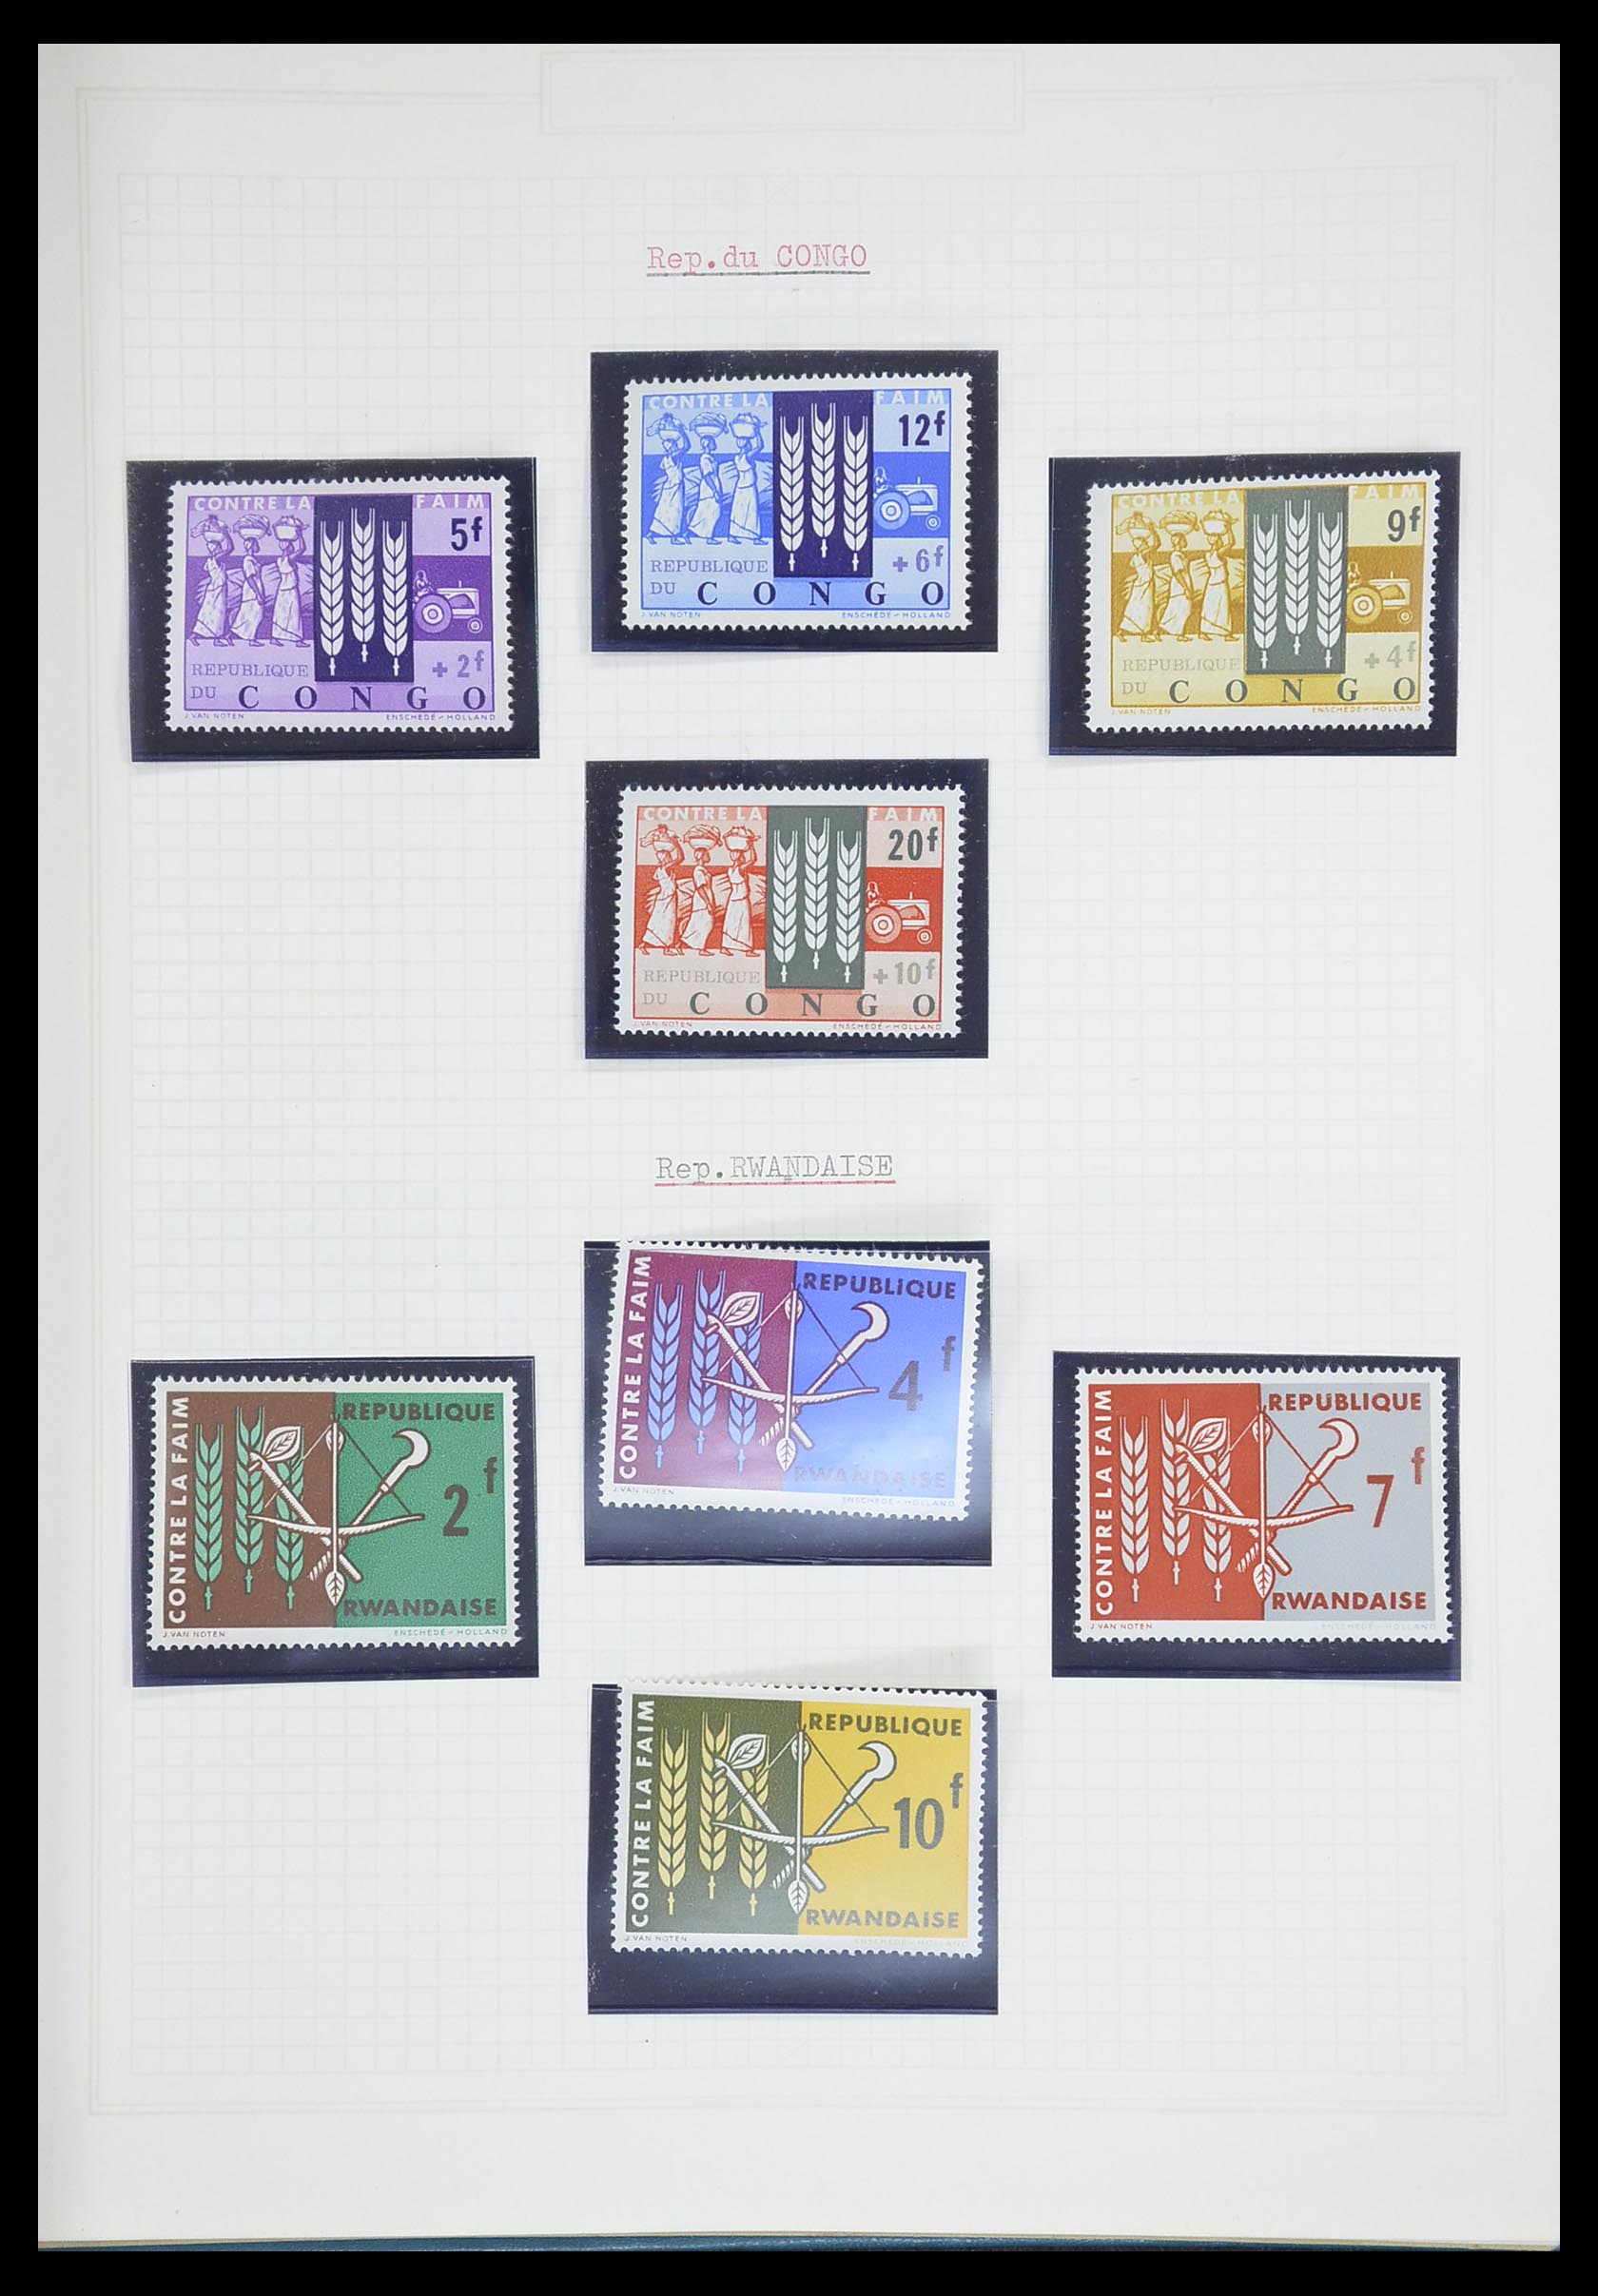 33747 437 - Postzegelverzameling 33747 Diverse motieven 1958-1986.